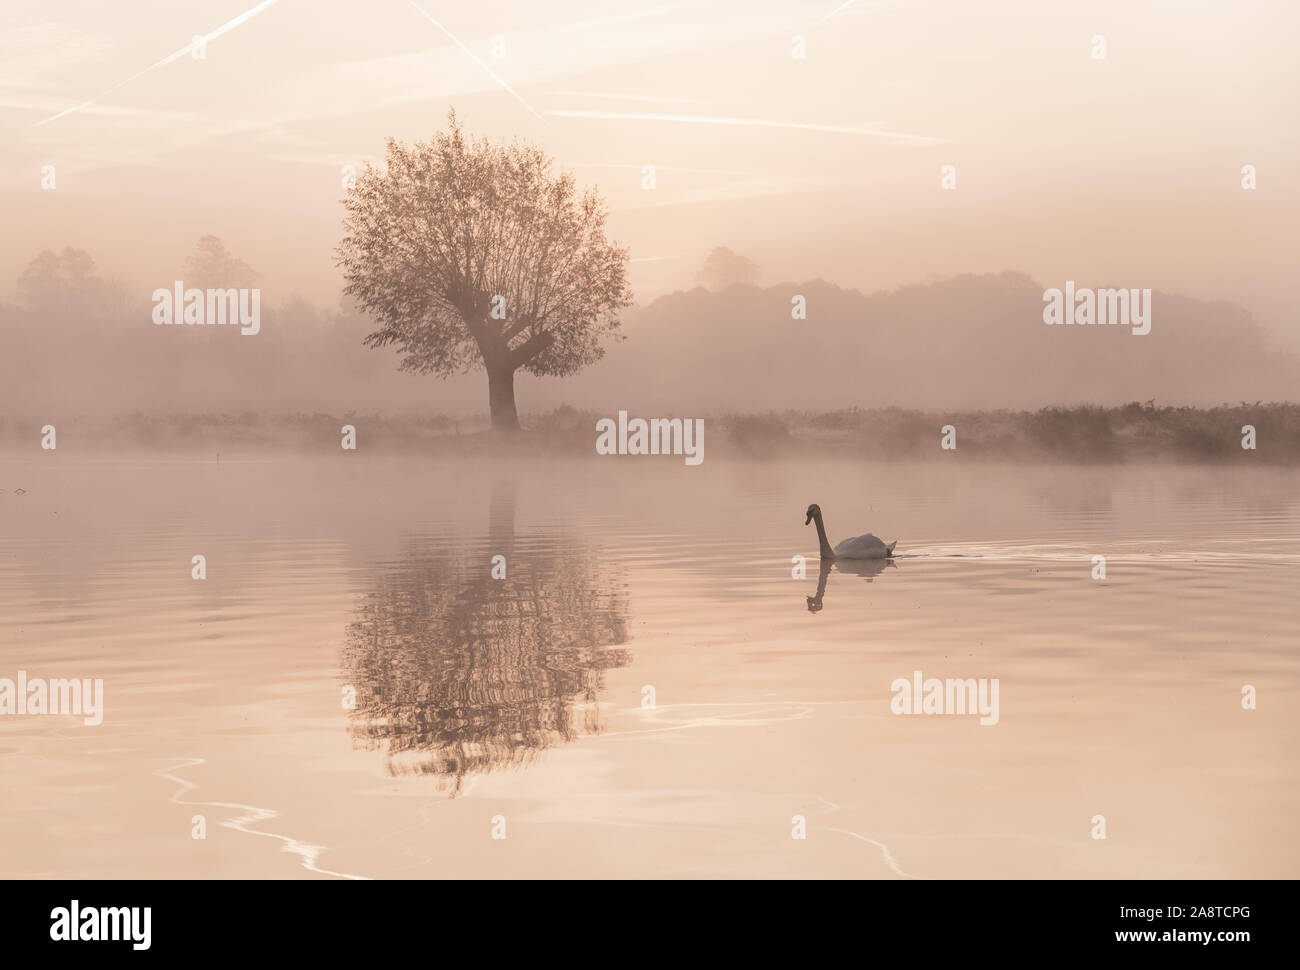 Un Cigno su un lago nel bosco di Bushy Park, Londra Inghilterra, con riflessi dell'acqua. Prese una fredda e nebbiosa mattina di autunno Foto Stock